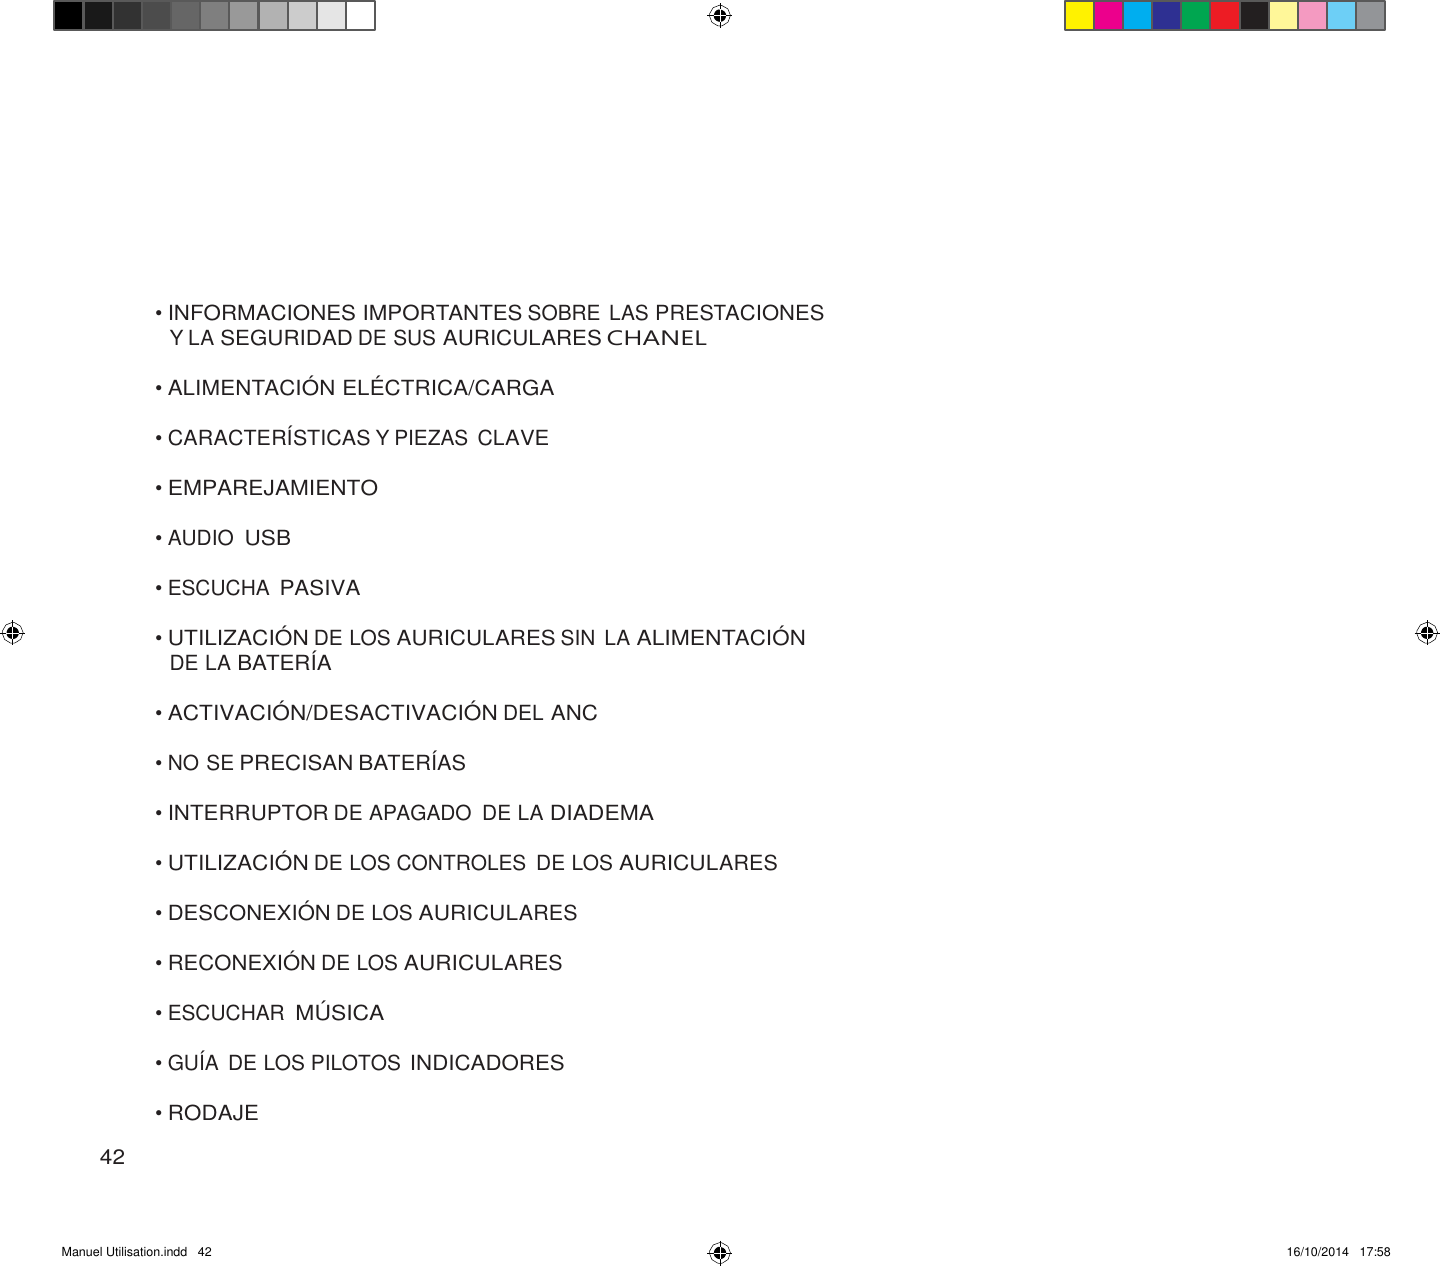 Manuel Utilisation.indd   42 16/10/2014   17:58               • INFORMACIONES IMPORTANTES SOBRE LAS PRESTACIONES Y LA SEGURIDAD DE SUS AURICULARES CHANEL  • ALIMENTACIÓ N ELÉ CTRICA/CARGA  • CARACTERÍSTICAS Y PIEZAS CLAVE  • EMPAREJAMIENTO  • AUDIO USB  • ESCUCHA PASIVA  • UTILIZACIÓ N DE LOS AURICULARES SIN LA ALIMENTACIÓ N DE LA BATERÍA  • ACTIVACIÓ N/DESACTIVACIÓ N DEL ANC  • NO SE PRECISAN BATERÍAS  • INTERRUPTOR DE APAGADO  DE LA DIADEMA  • UTILIZACIÓ N DE LOS CONTROLES  DE LOS AURICULARES  • DESCONEXIÓ N DE LOS AURICULARES  • RECONEXIÓ N DE LOS AURICULARES  • ESCUCHAR MÚ SICA  • GUÍA DE LOS PILOTOS INDICADORES  • RODAJE  42 